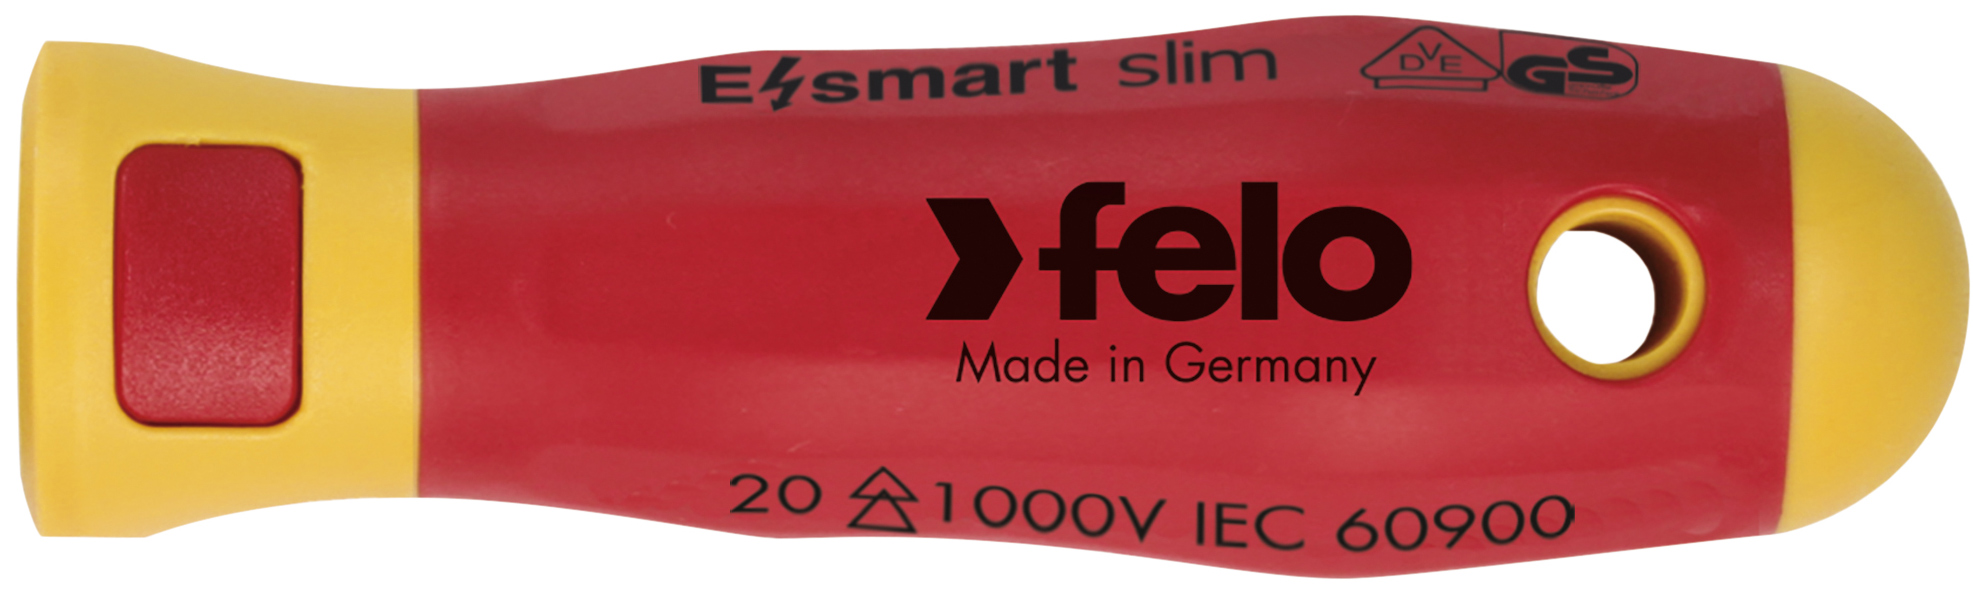 Felo Schraubendreher E-smart slim Griff Schraubenzieher Griff für patentieres Wechselklingen-System - Serie 063 slim VDE (FL-06320500) Bild-01